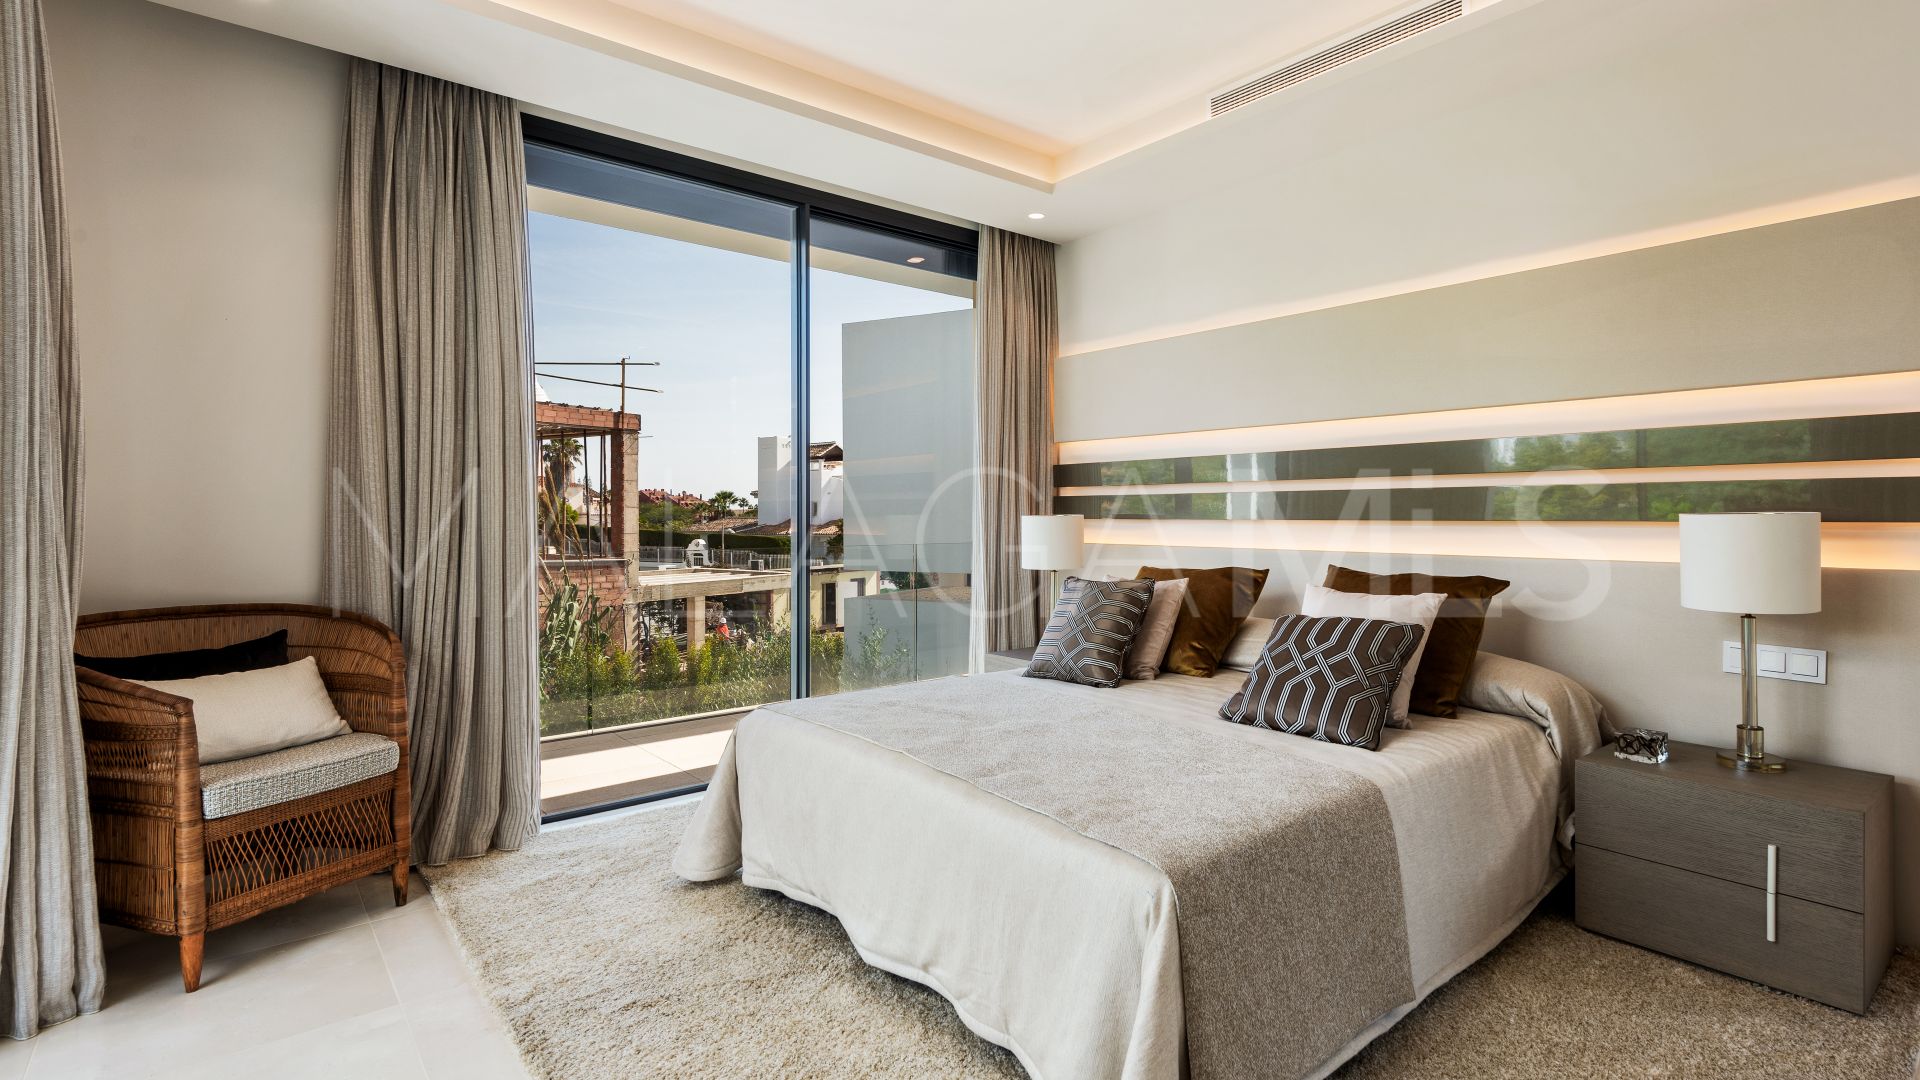 Real de Zaragoza 5 bedrooms villa for sale